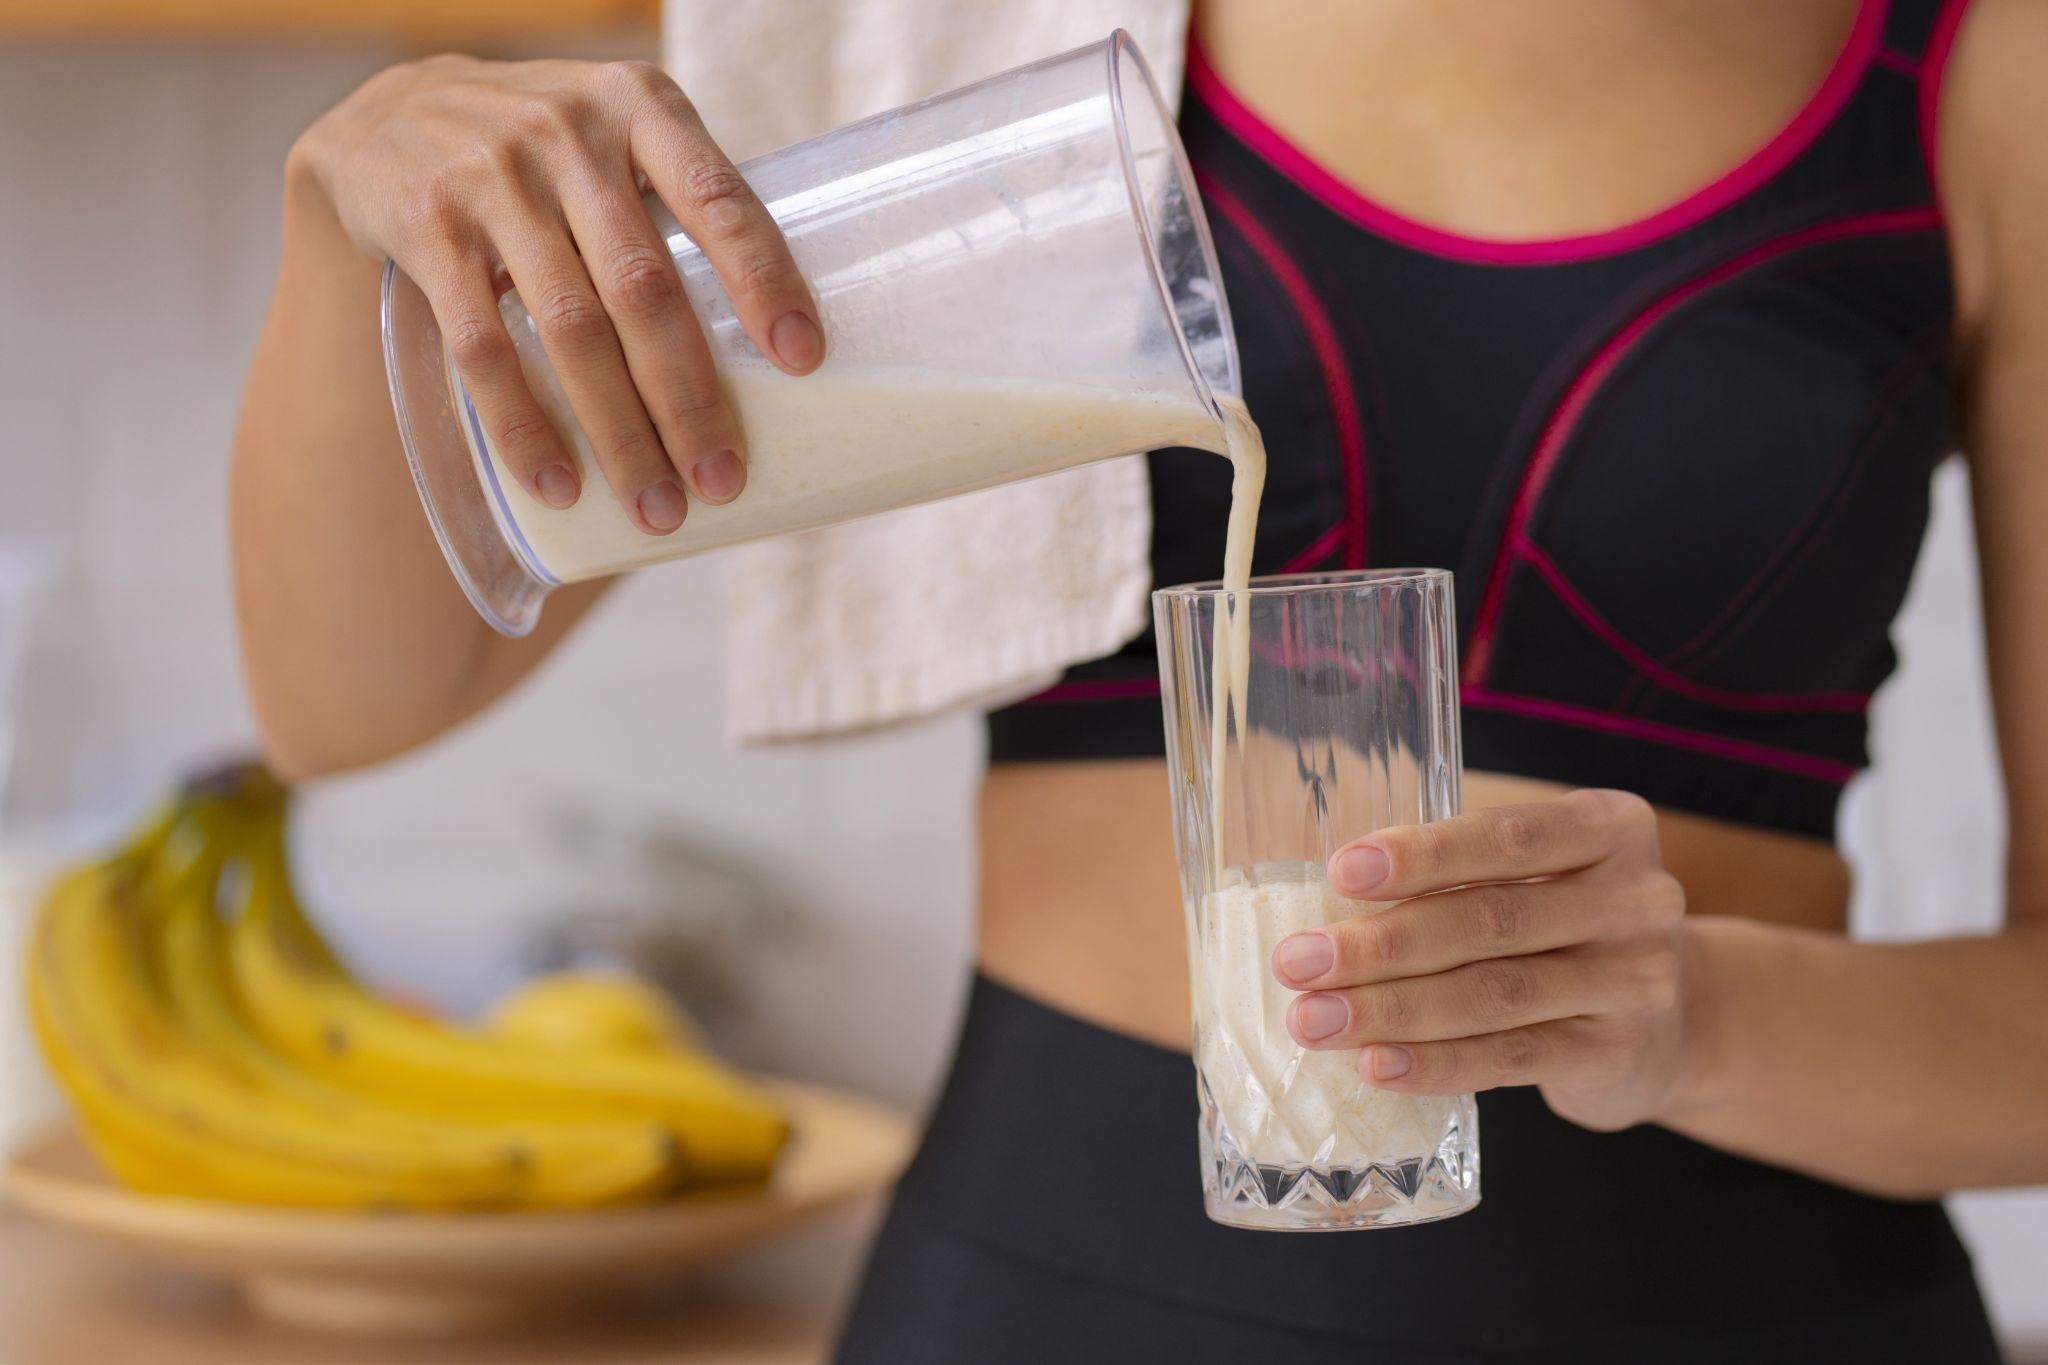 Sữa không đường bao nhiêu calo? Uống sữa không đường có béo không?